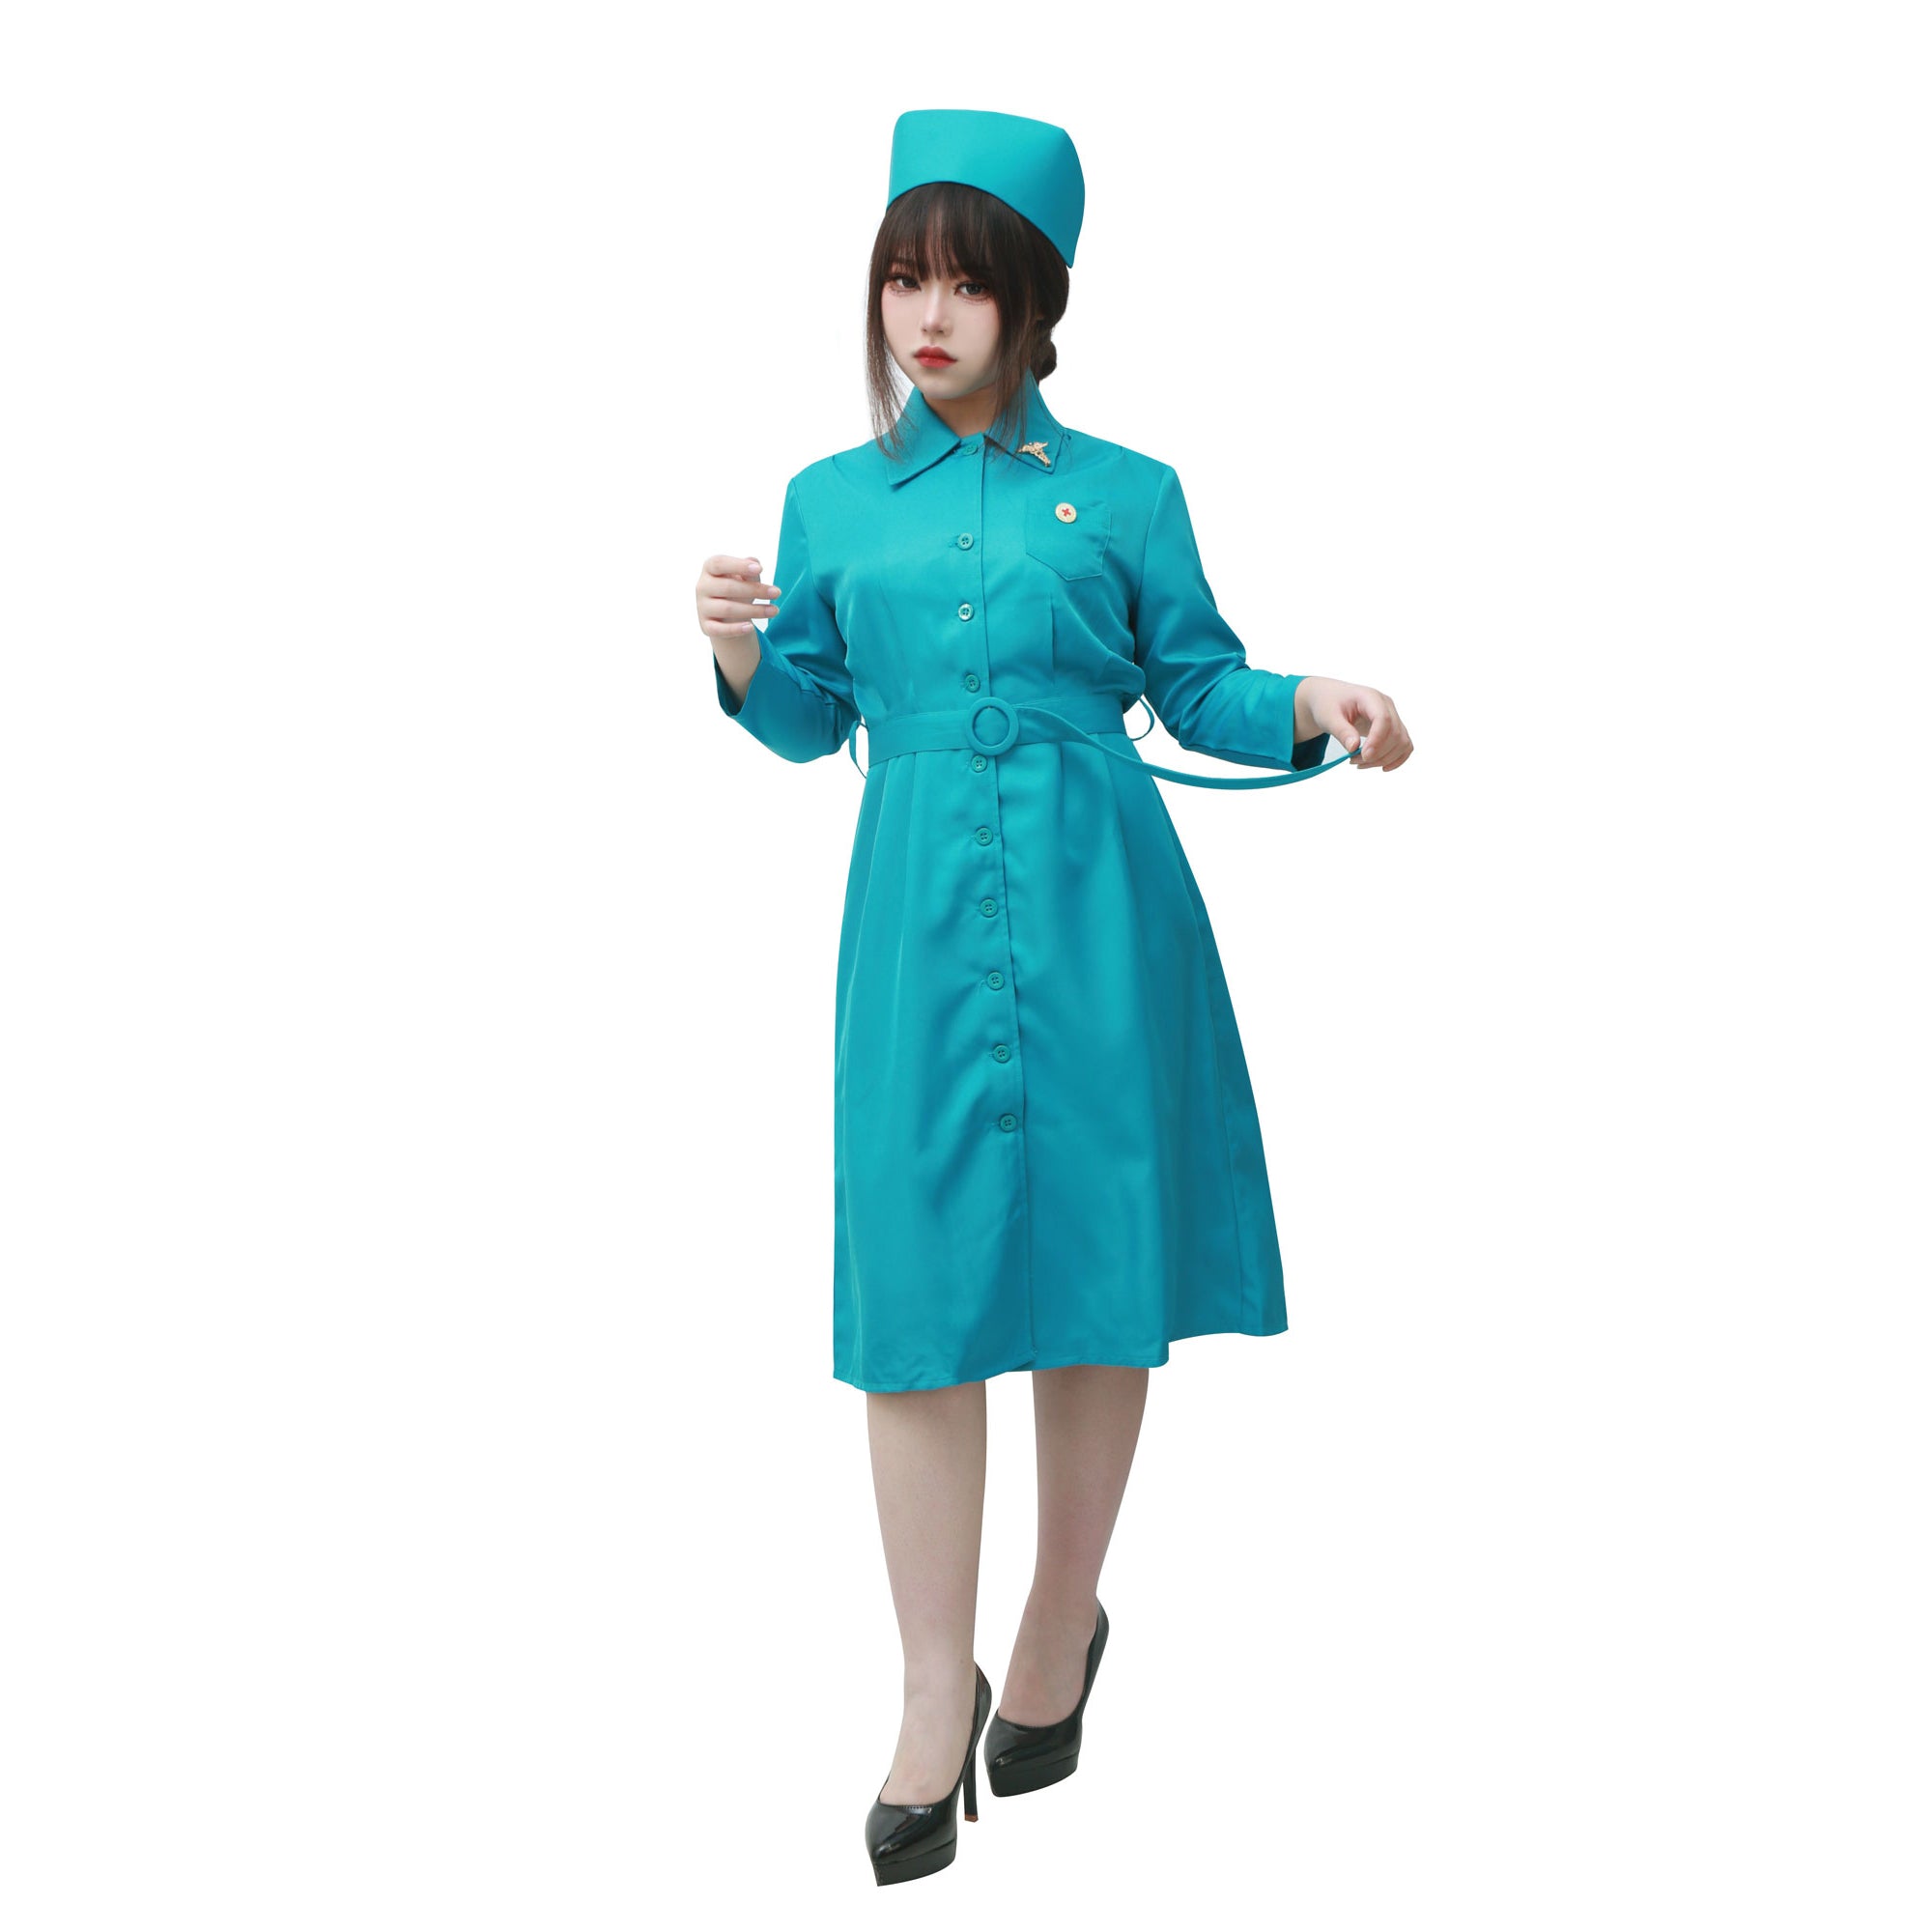 DAZCOS ラチェット コスプレ衣装 ブルー ナースドレス ベルトと帽子付き